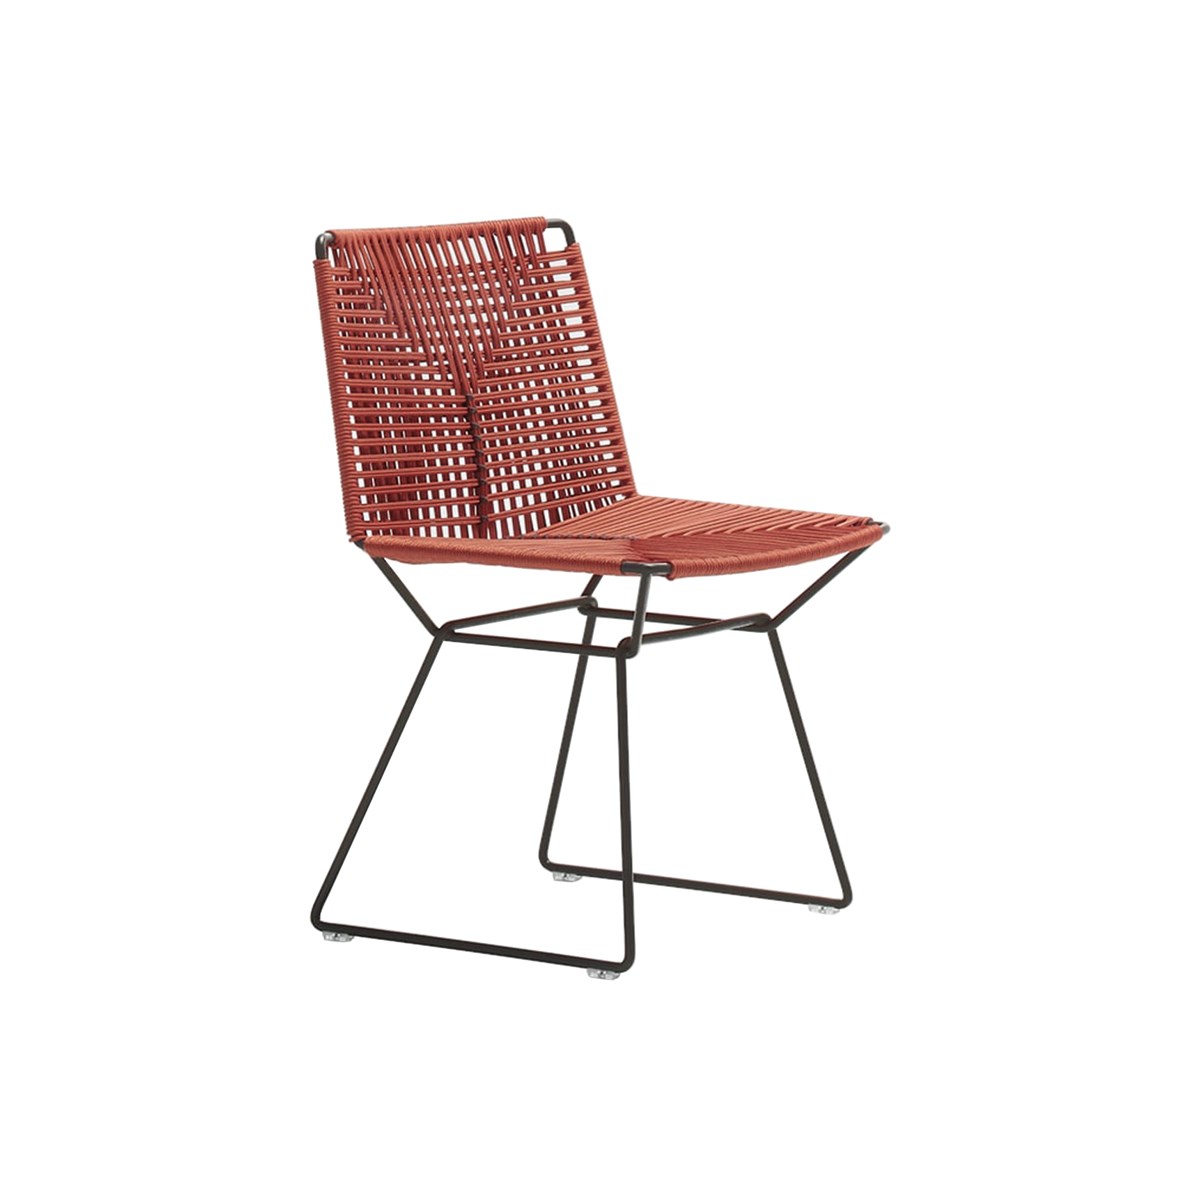 MDF-Italia-Jean-Marie-Massaud-Neil-Twist-Chair-Matisse-1